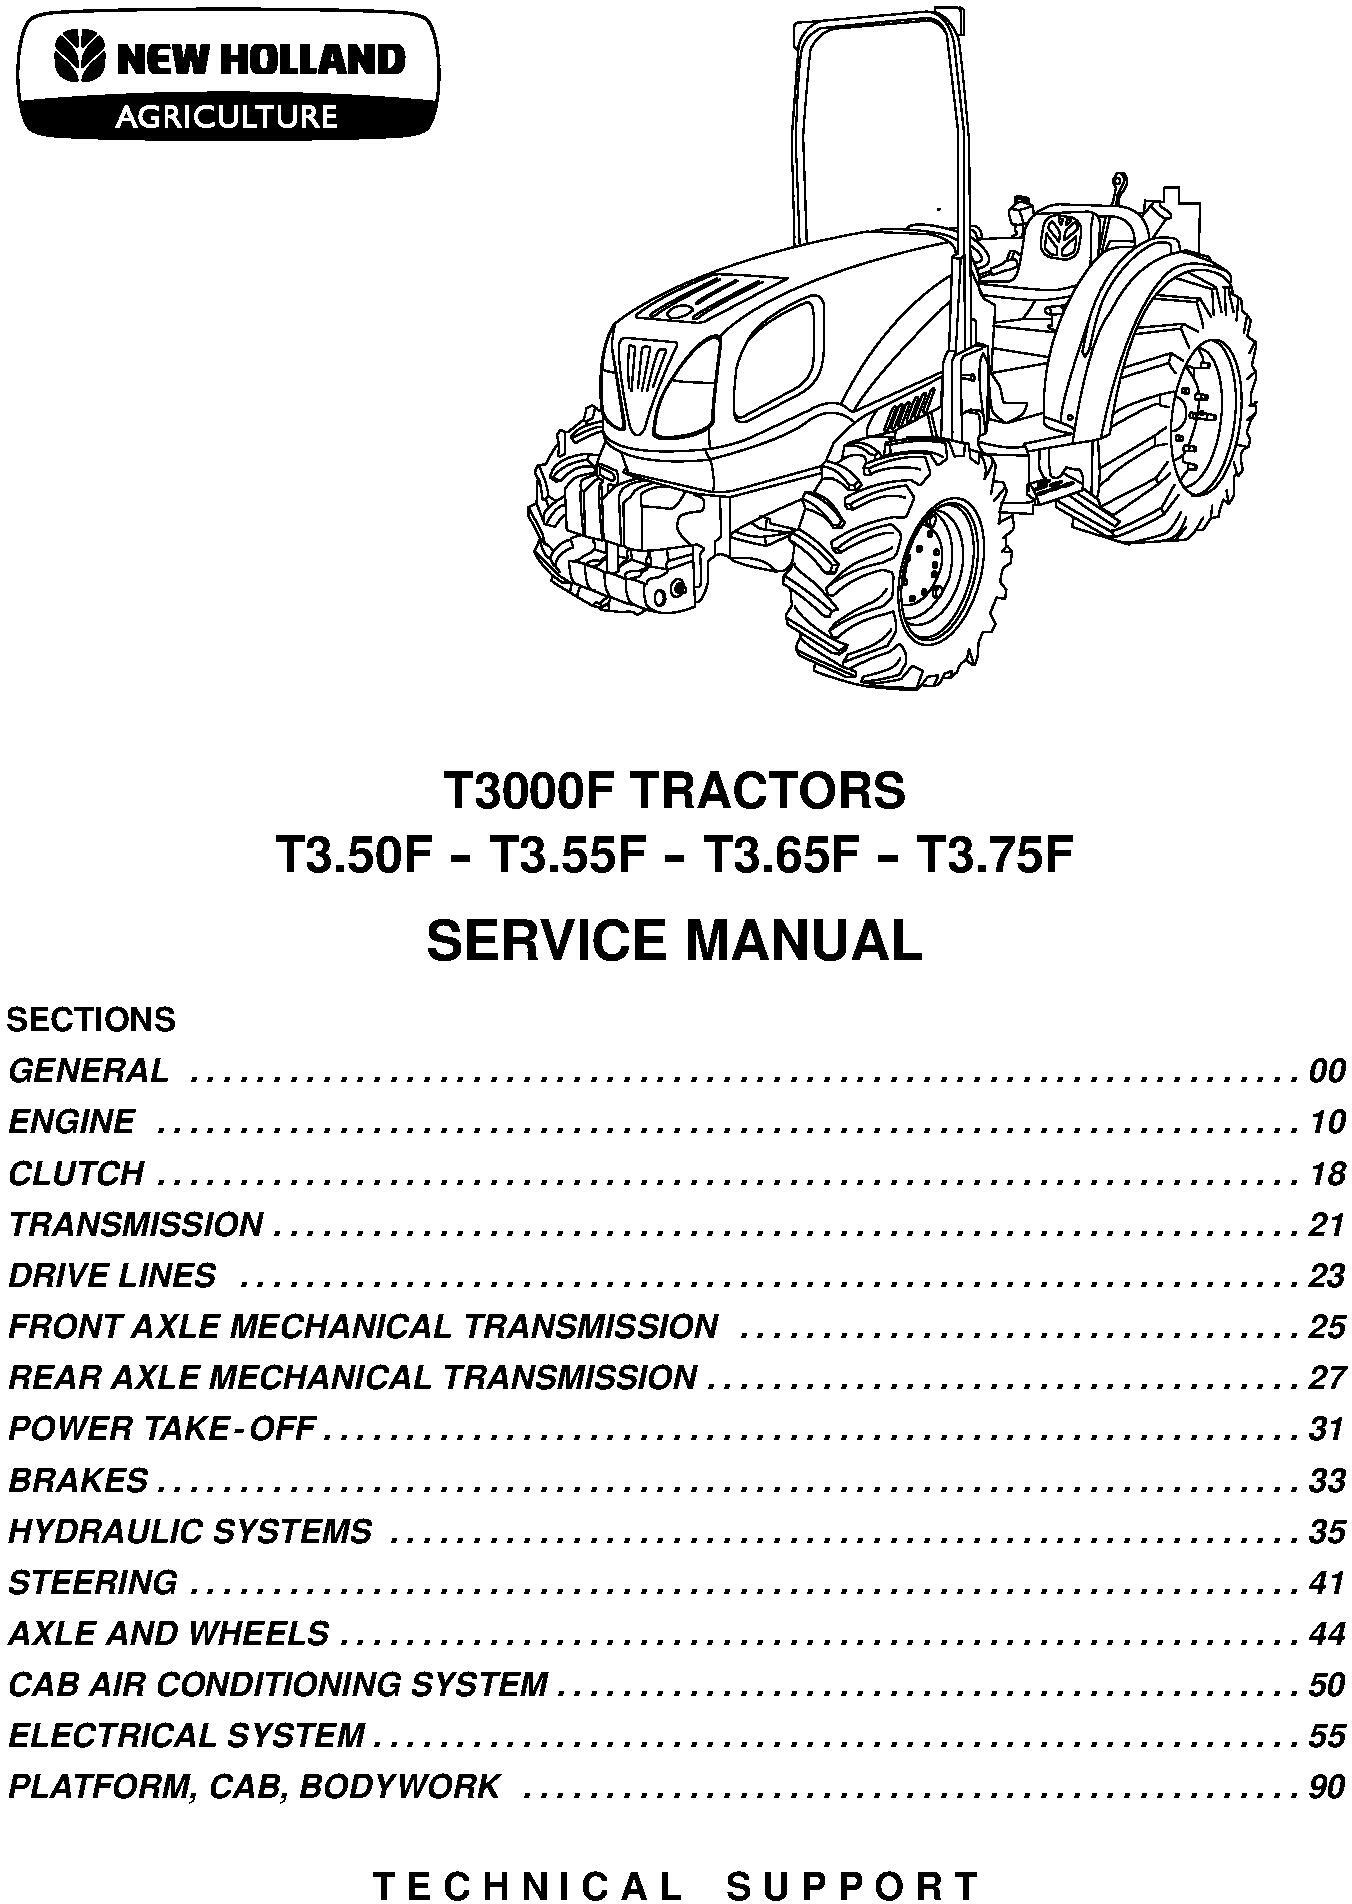 New Holland T3.50F, T3.55F, T3.66F, T3.75F Tractor Service Manual - 1